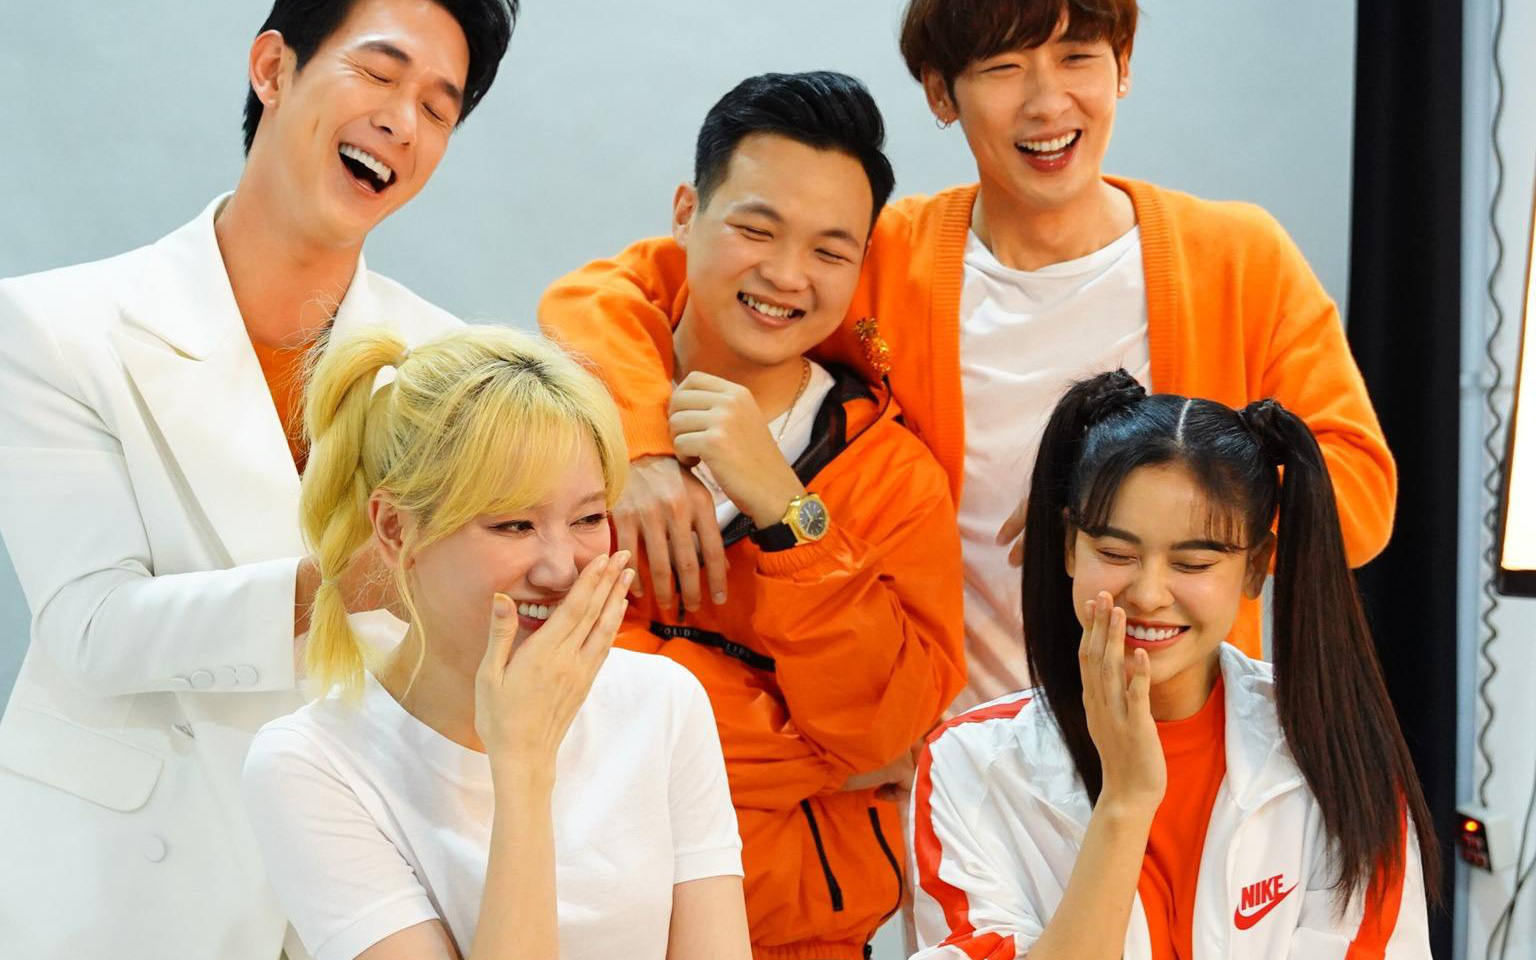 Đội hình Thử Thách Trốn Thoát lộ diện đủ 5 thành viên, fan tò mò về show thực tế Trốn Thoát tiên phong tại Việt Nam